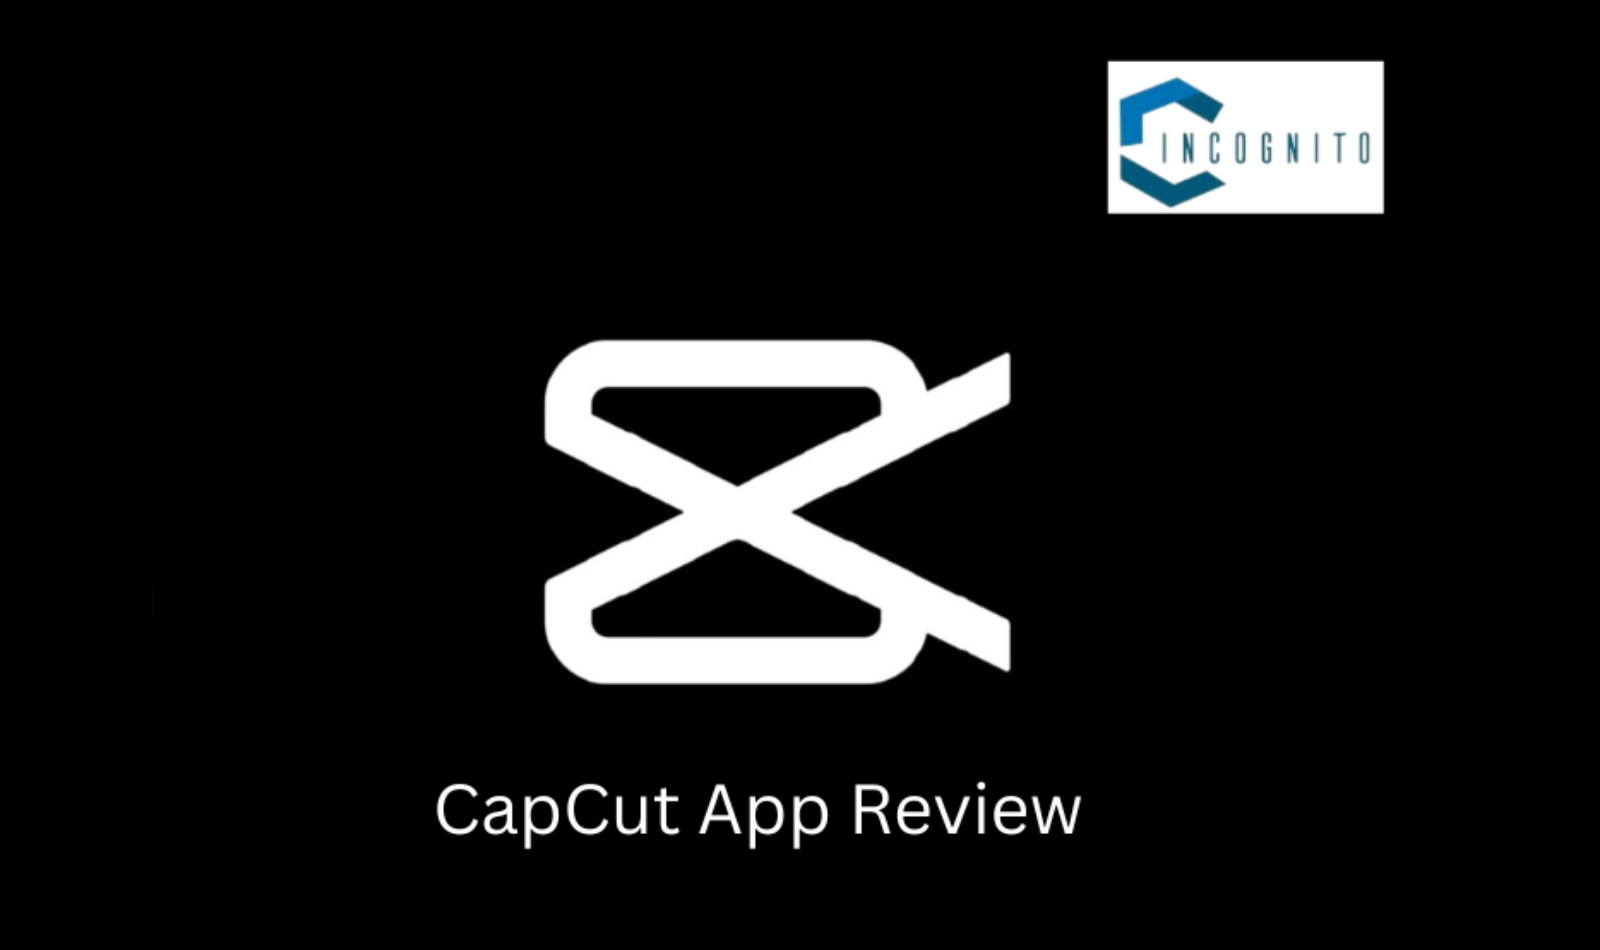 CapCut App Review